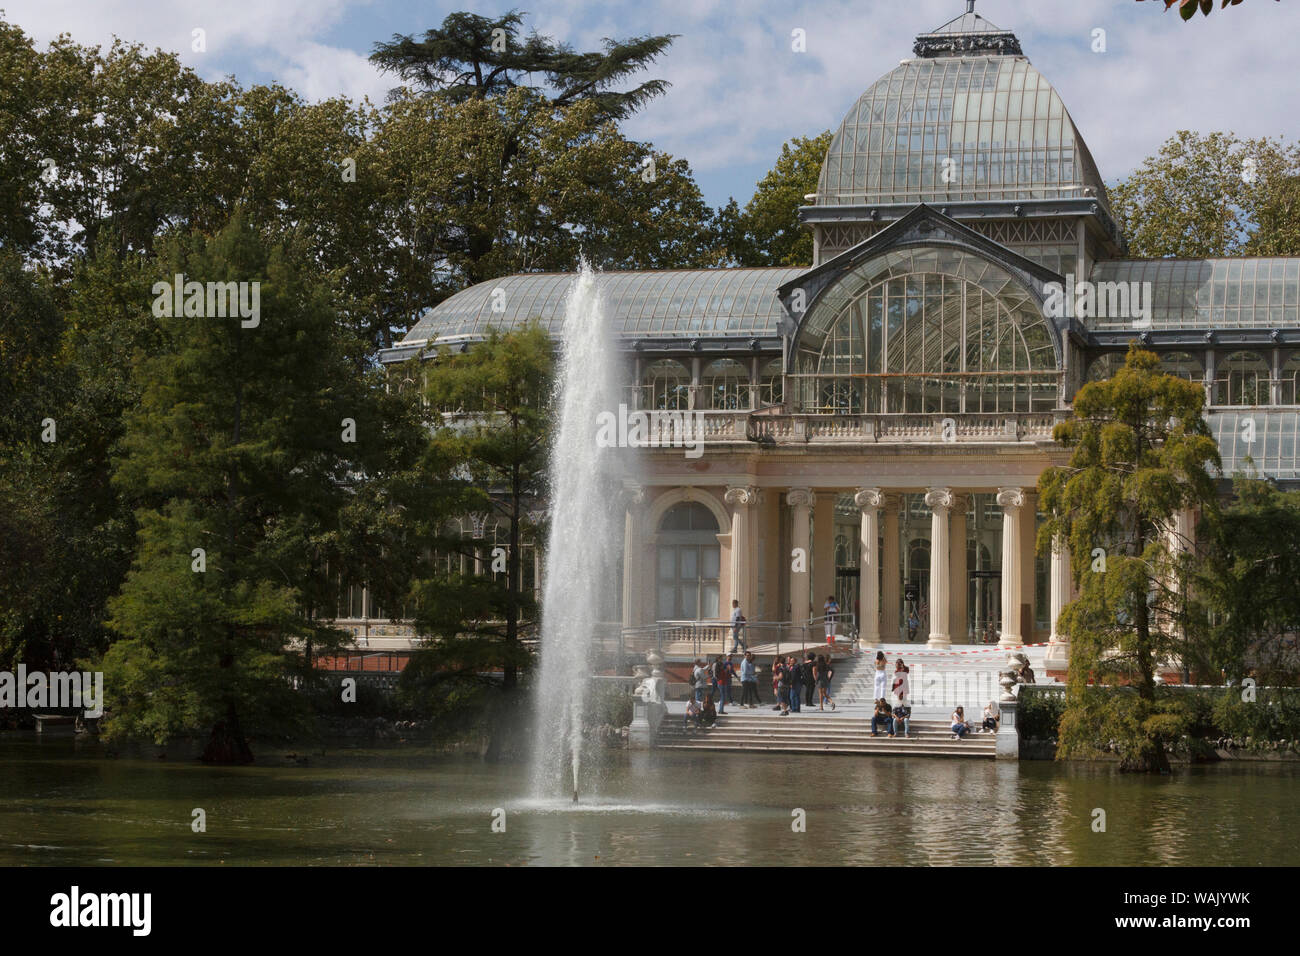 Palacio de Cristal. Parque de el Retiro. Madrid, Spain. Stock Photo